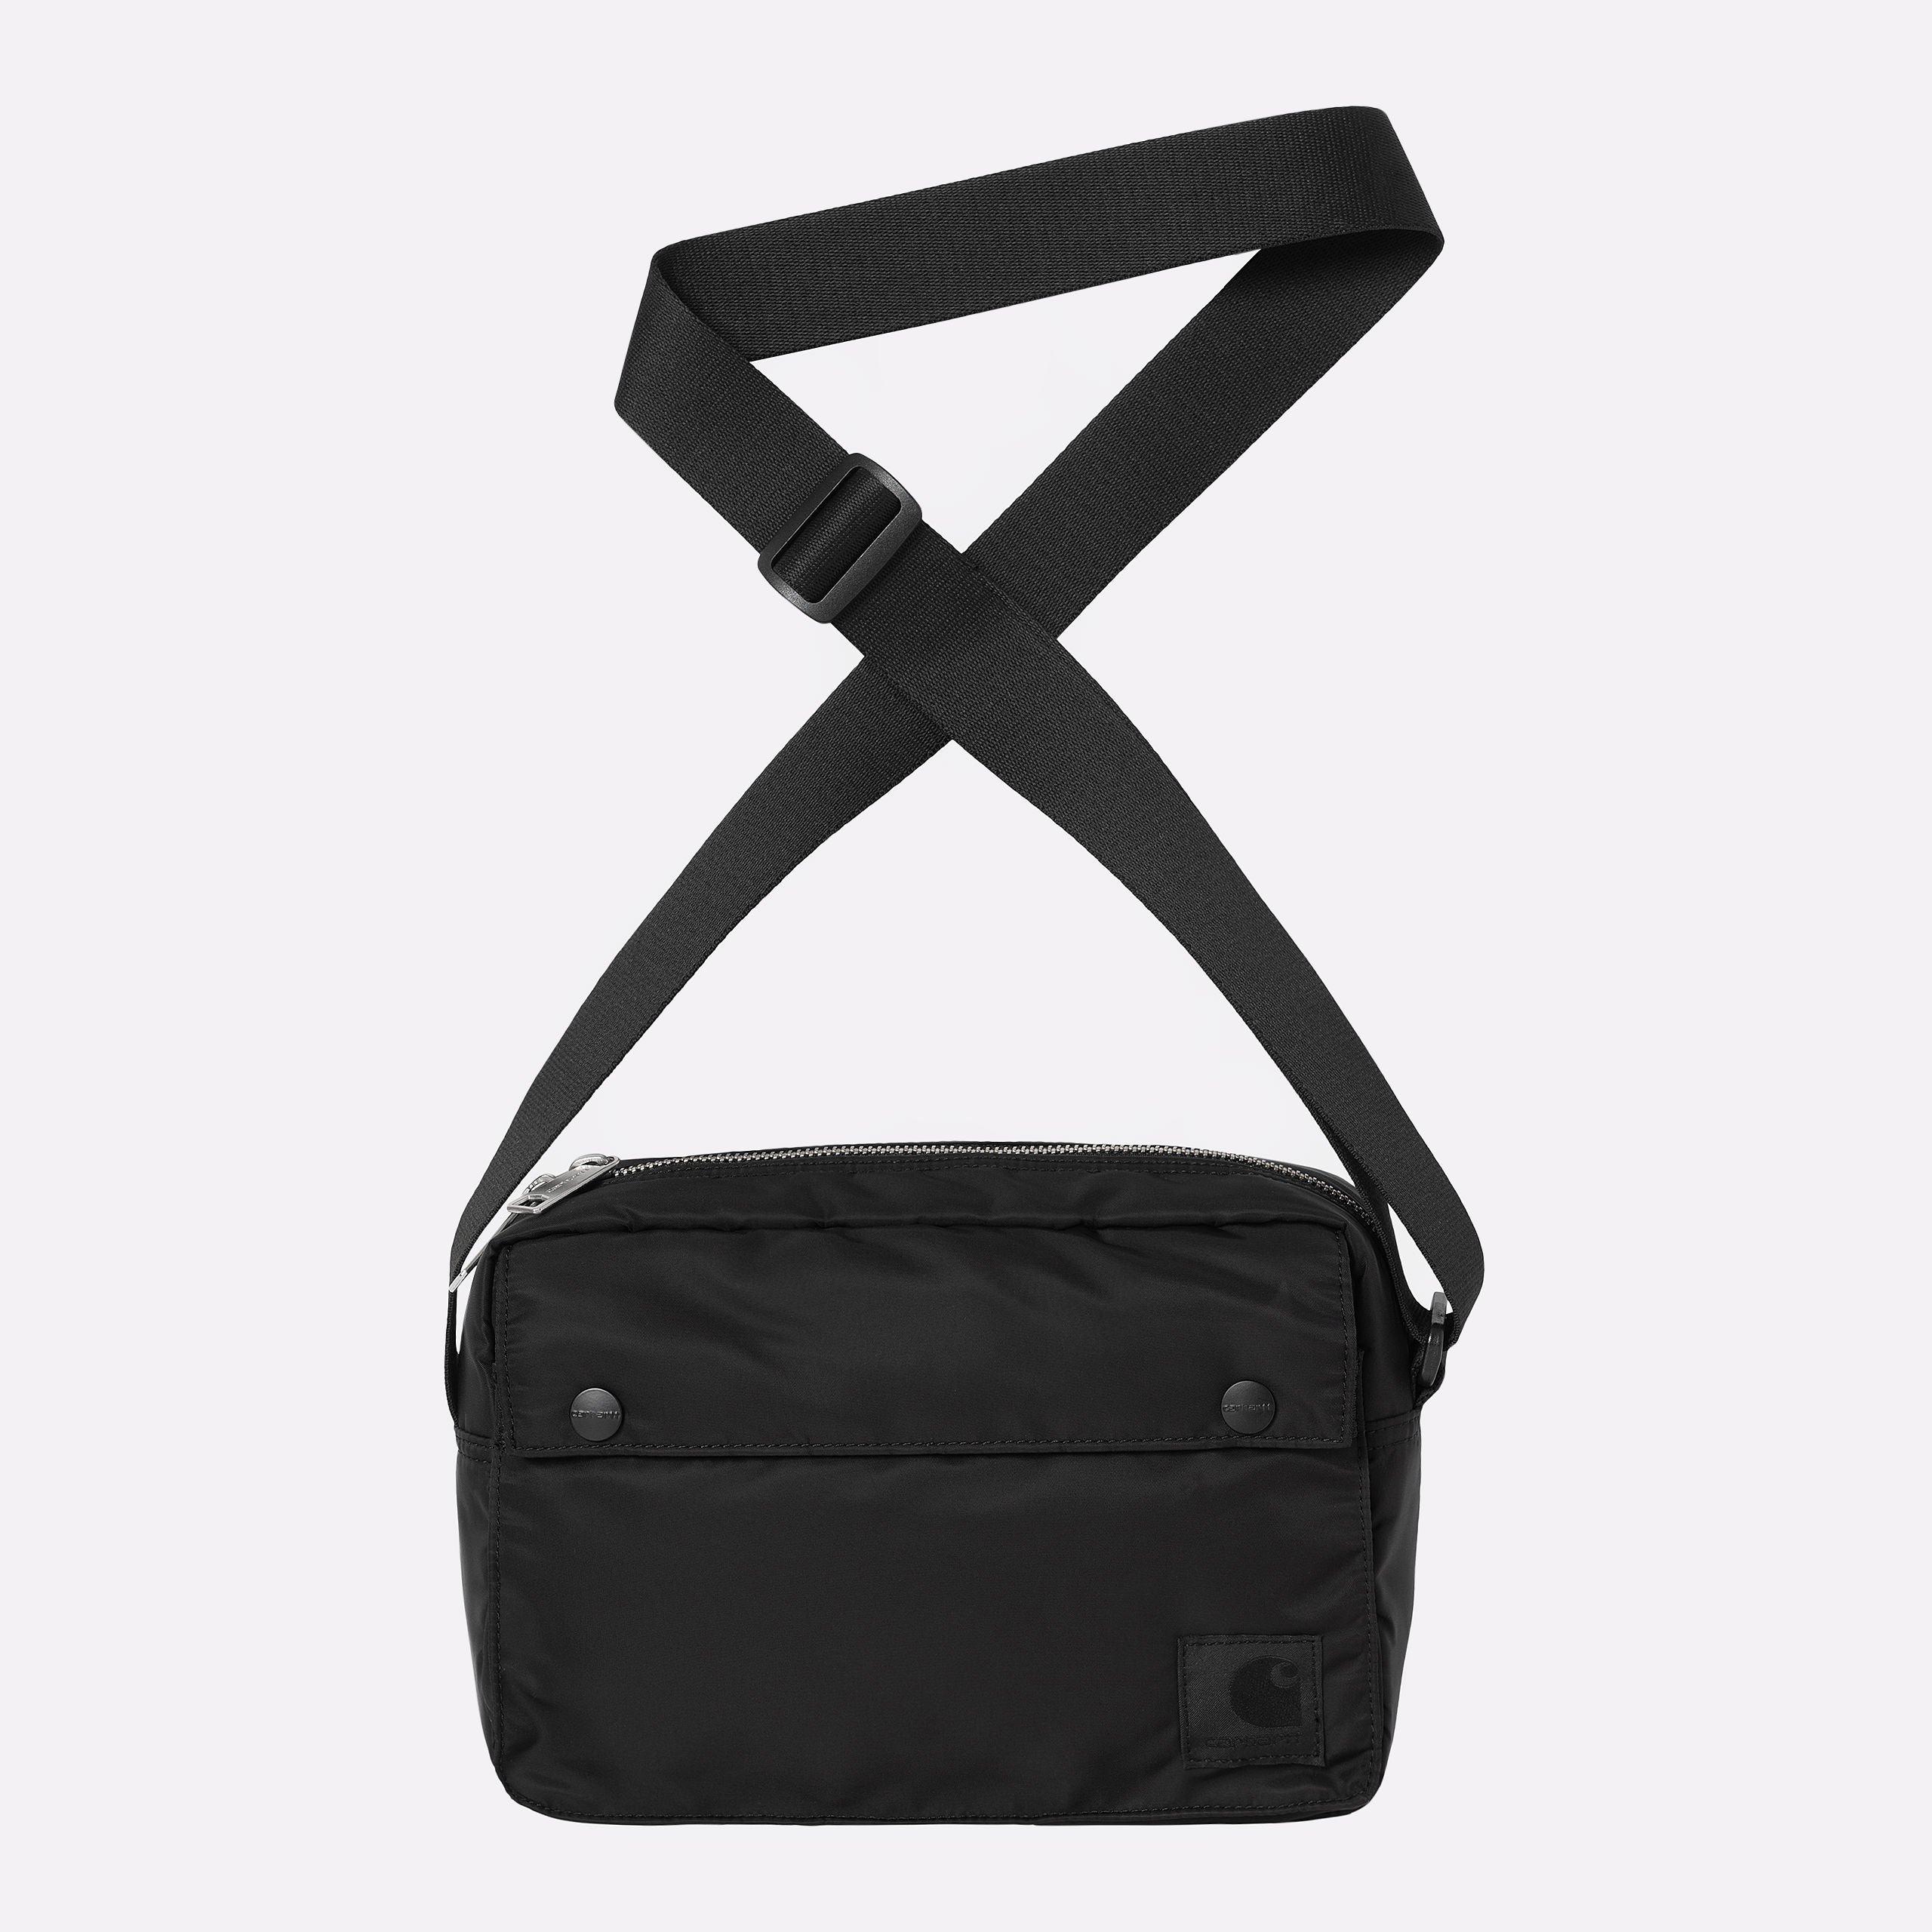  черная сумка Carhartt WIP Otley Shoulder Bag I033097-black - цена, описание, фото 1